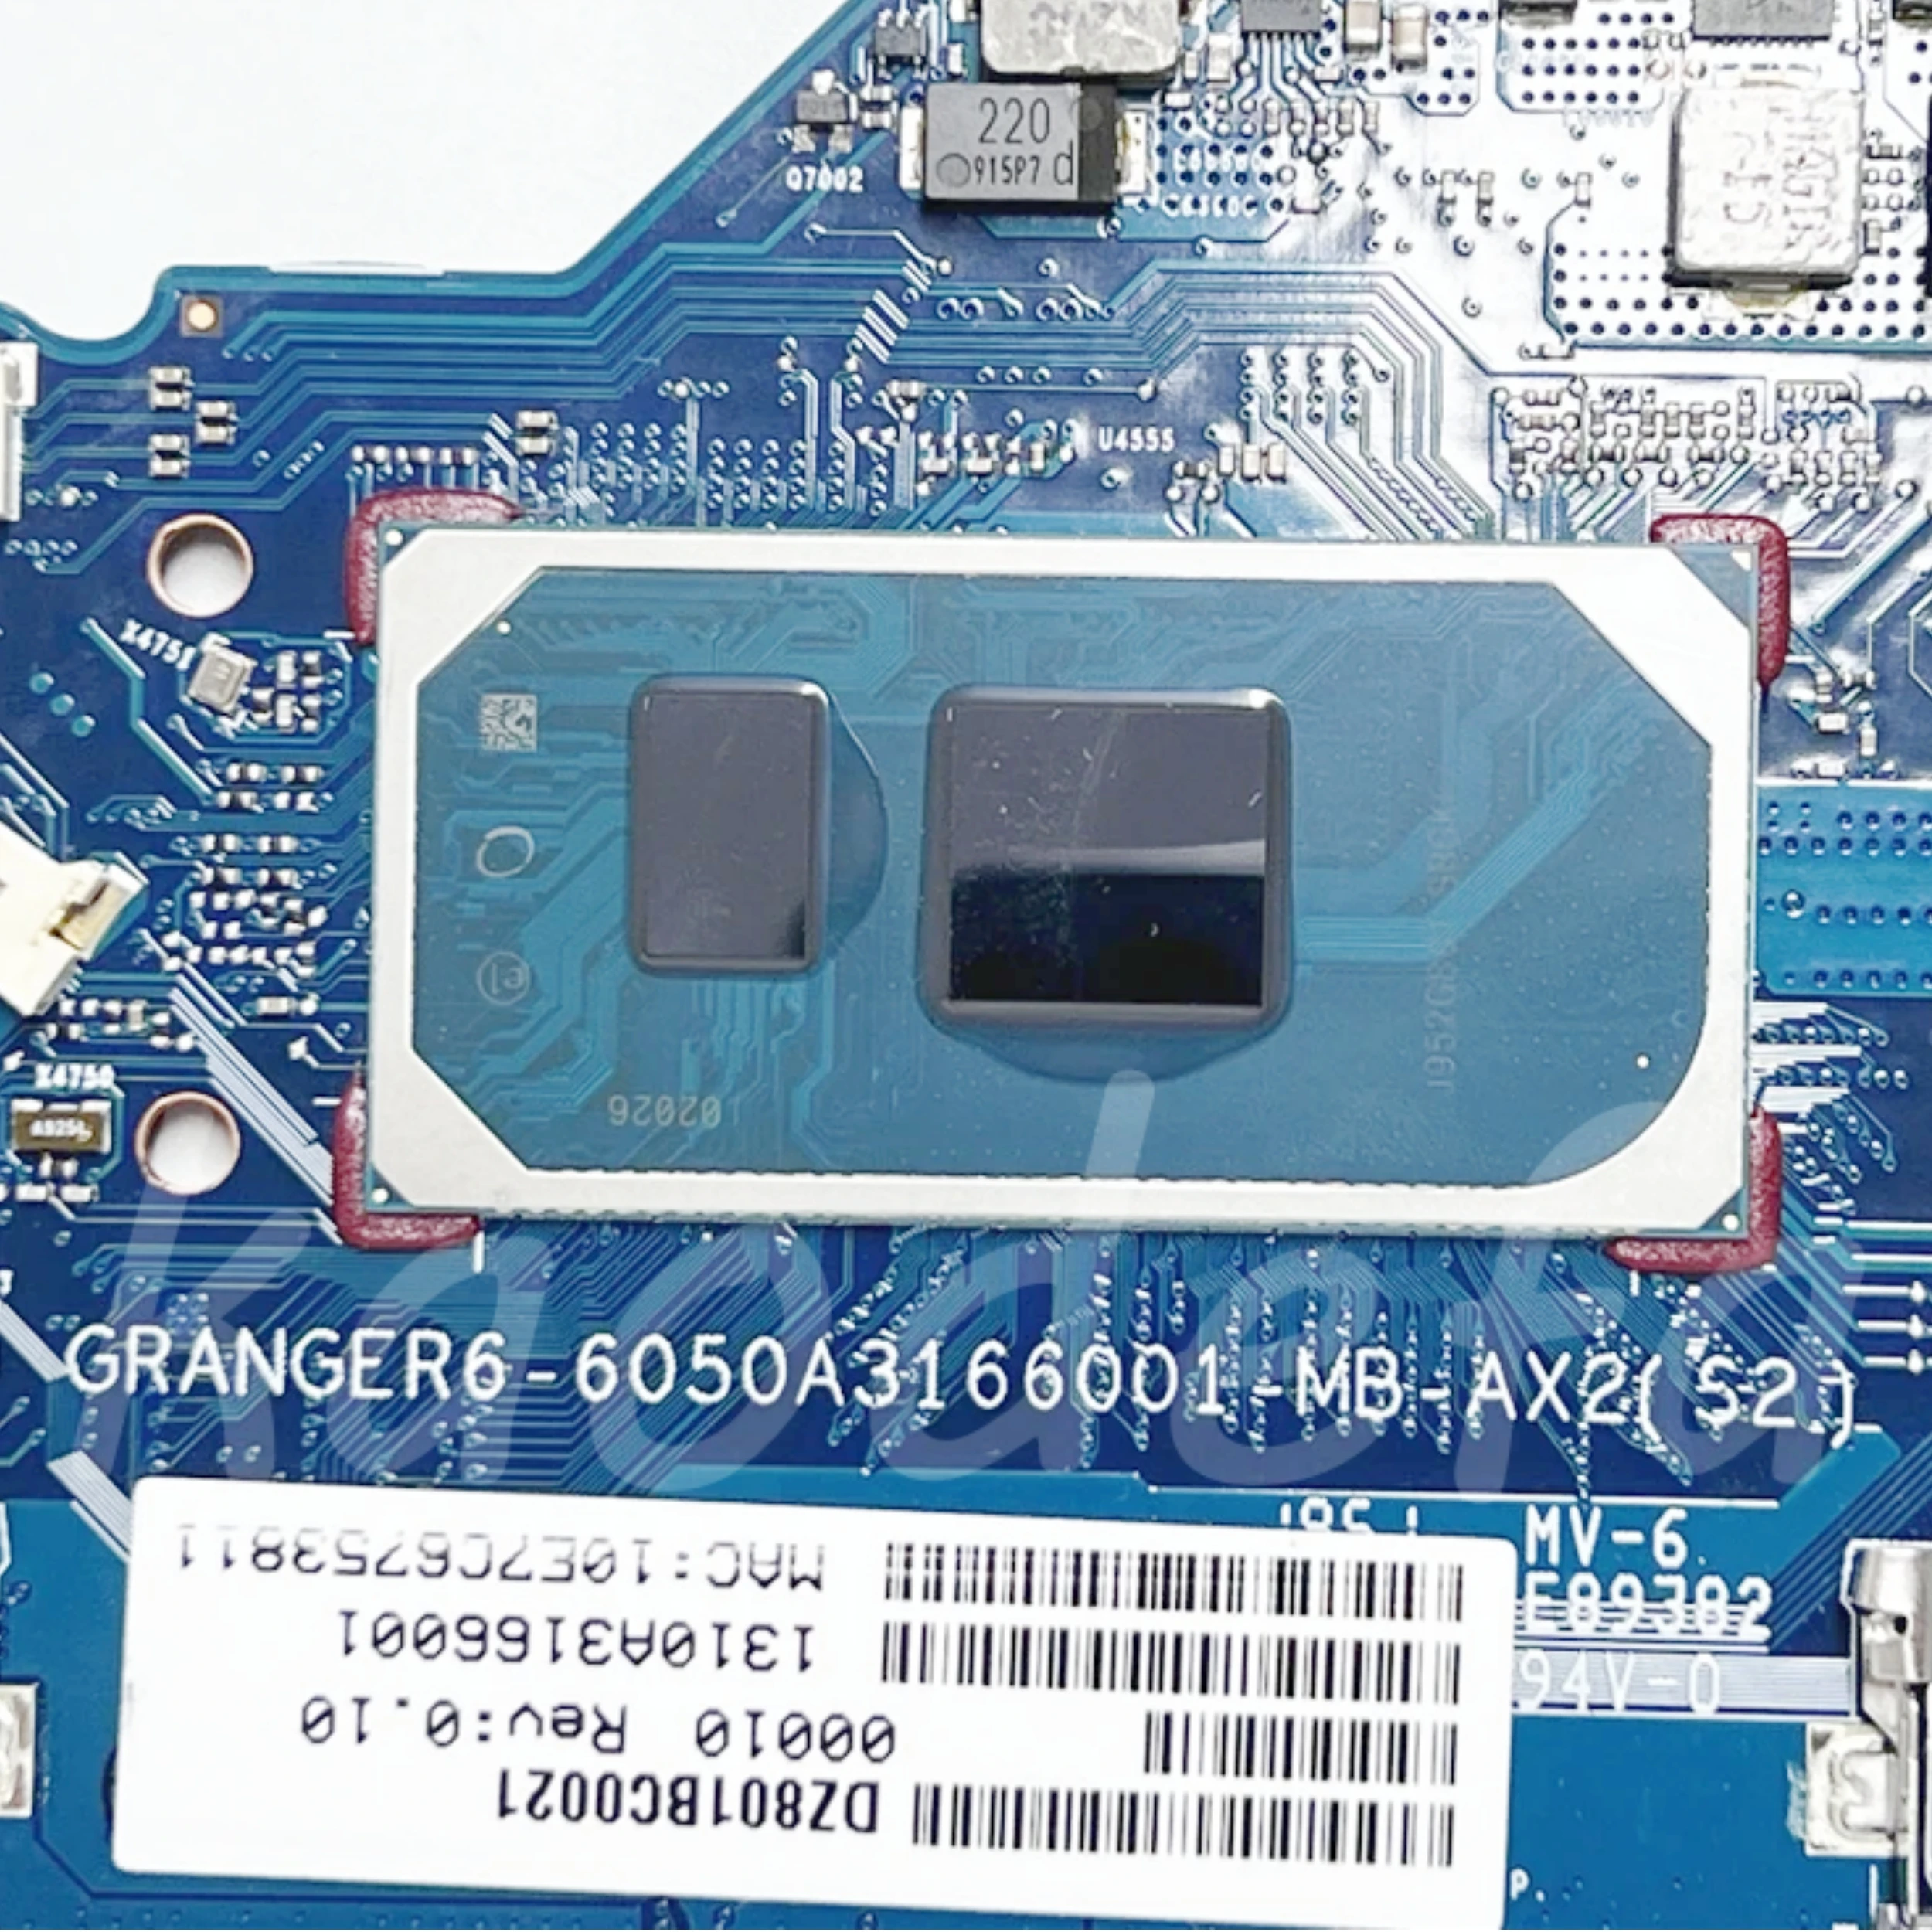 6050A3166001 Дънна платка за HP 240 G7 14-CK Дънна платка за лаптоп CPU: I3-1005G1 I5-1035G1 I7-10510U Графичен процесор: 2GB AMD DDR4 100% Тест OK